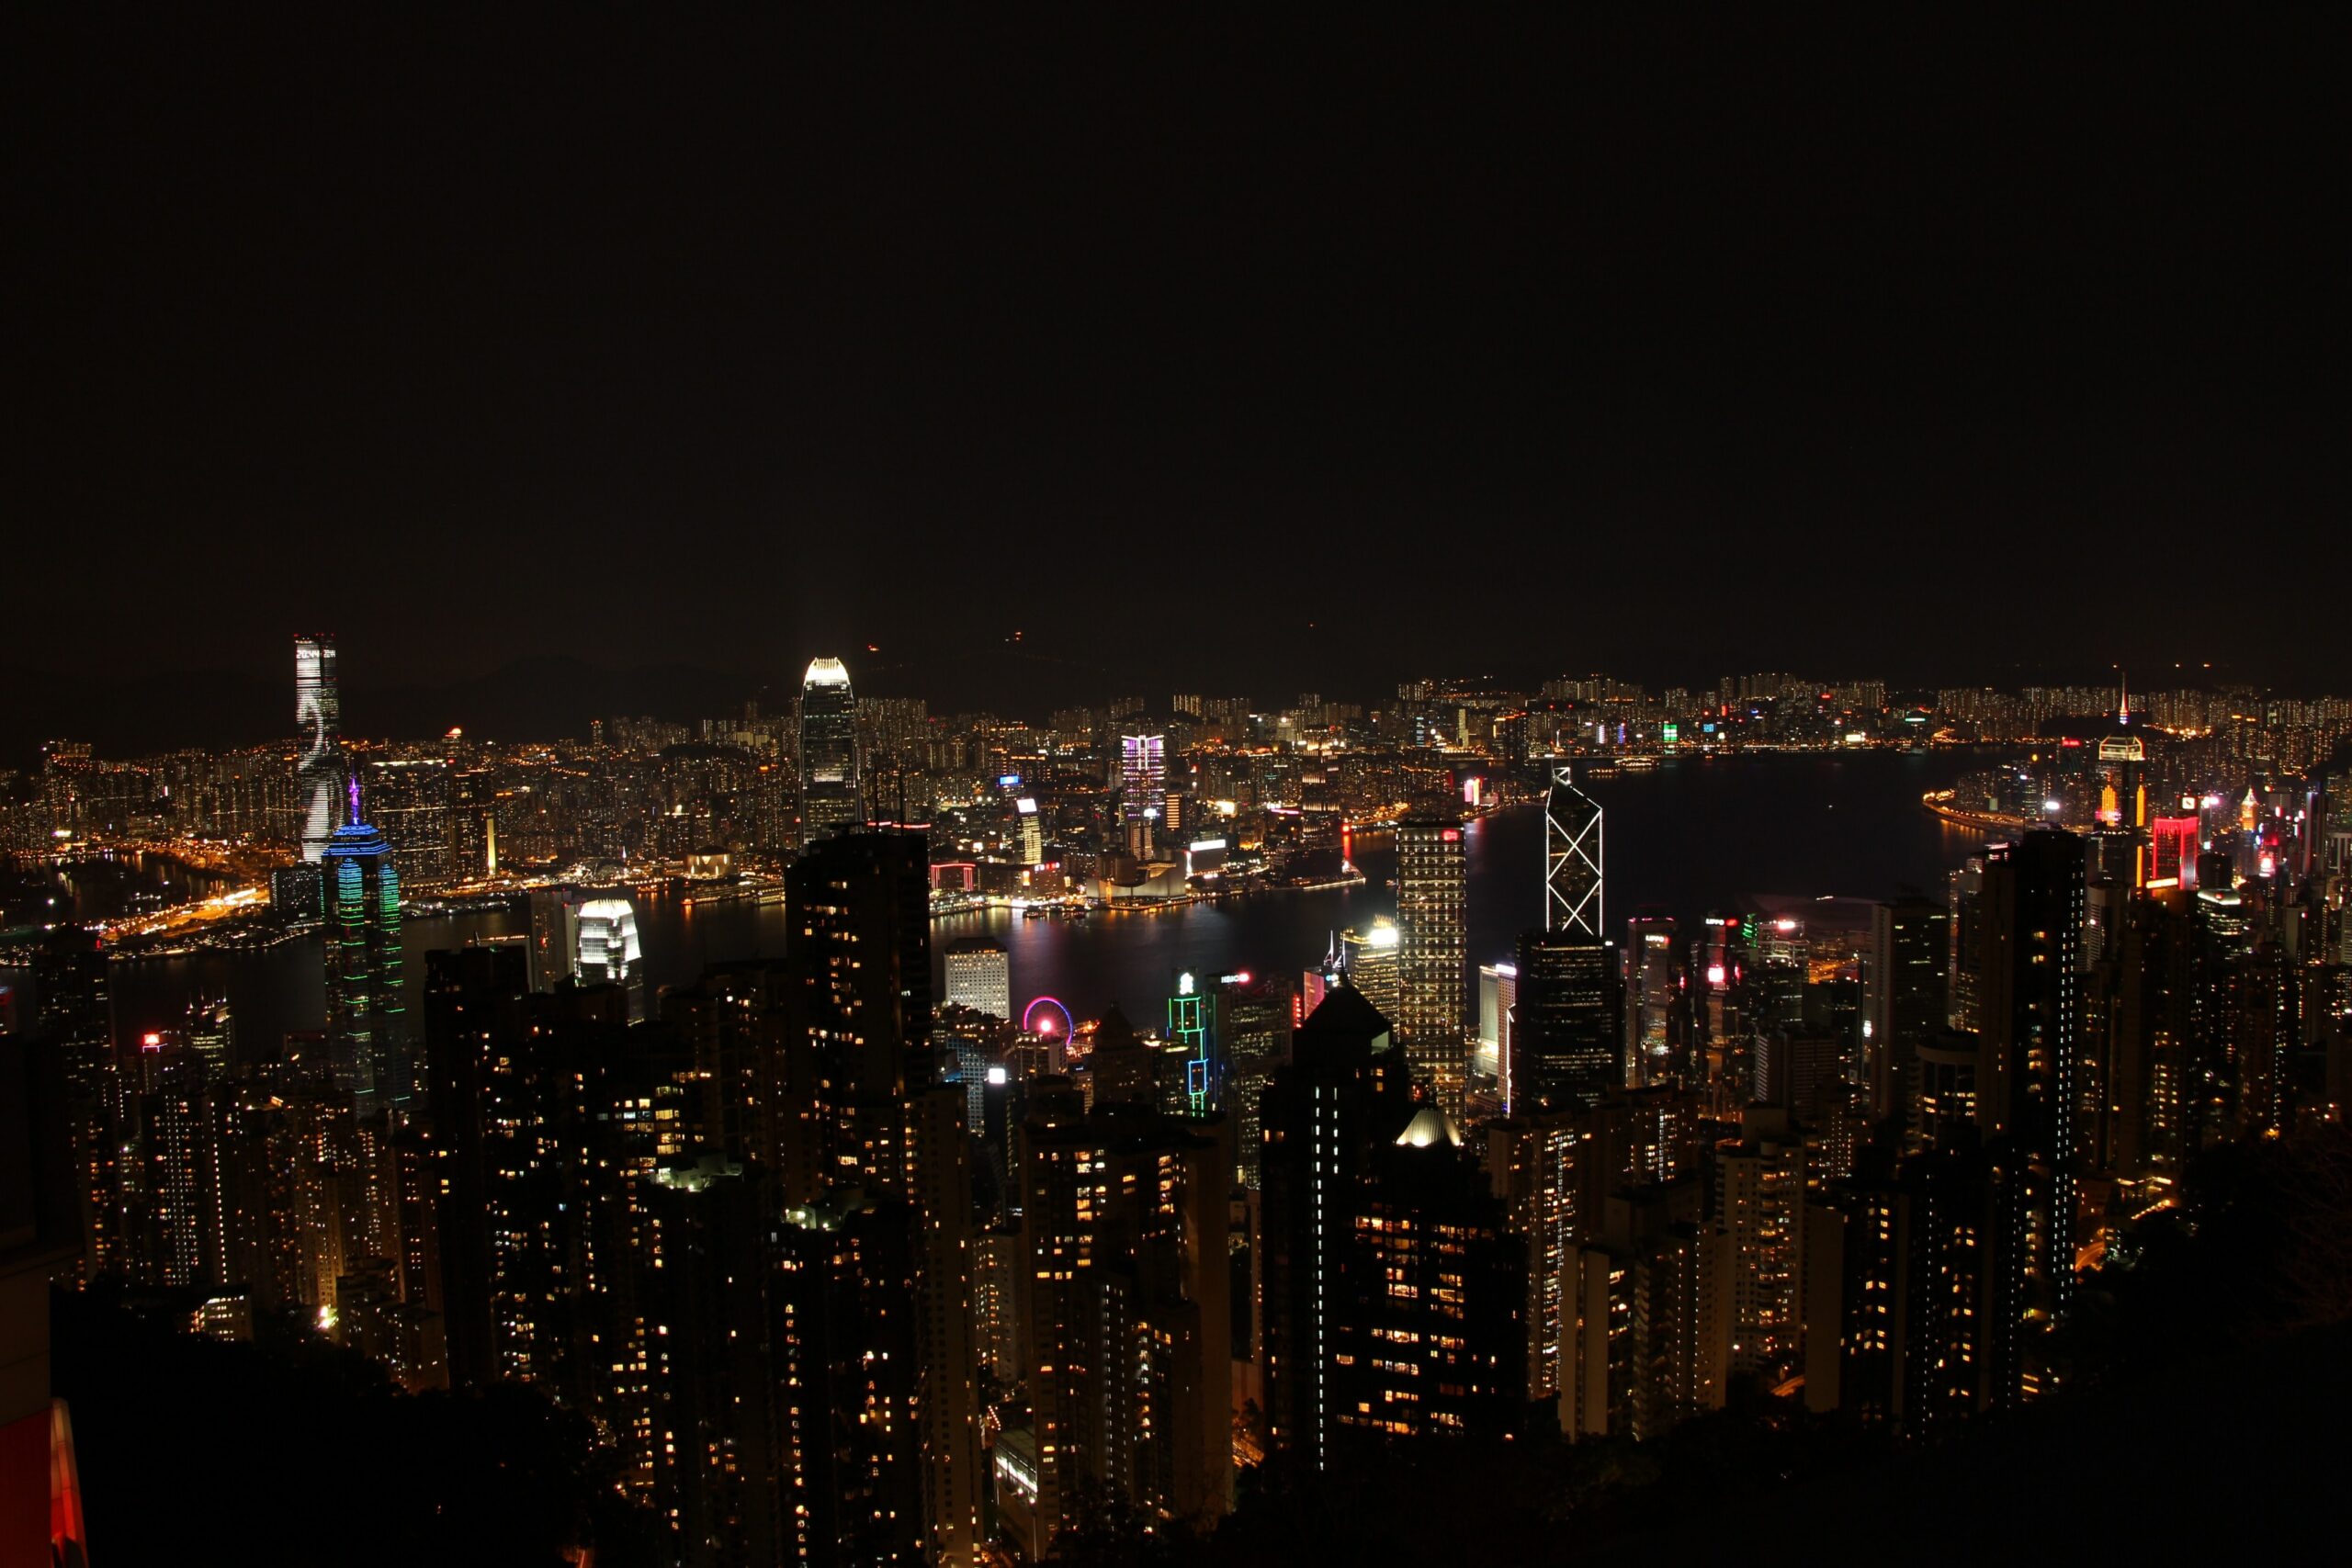 he Peak Hong Kong, The Peak Hong Kong เกาะแสนอบอุ่นที่เต็มไปด้วยวิวตระการตา ทัวร์ฮ่องกงส่วนตัว, Holidays Playful,